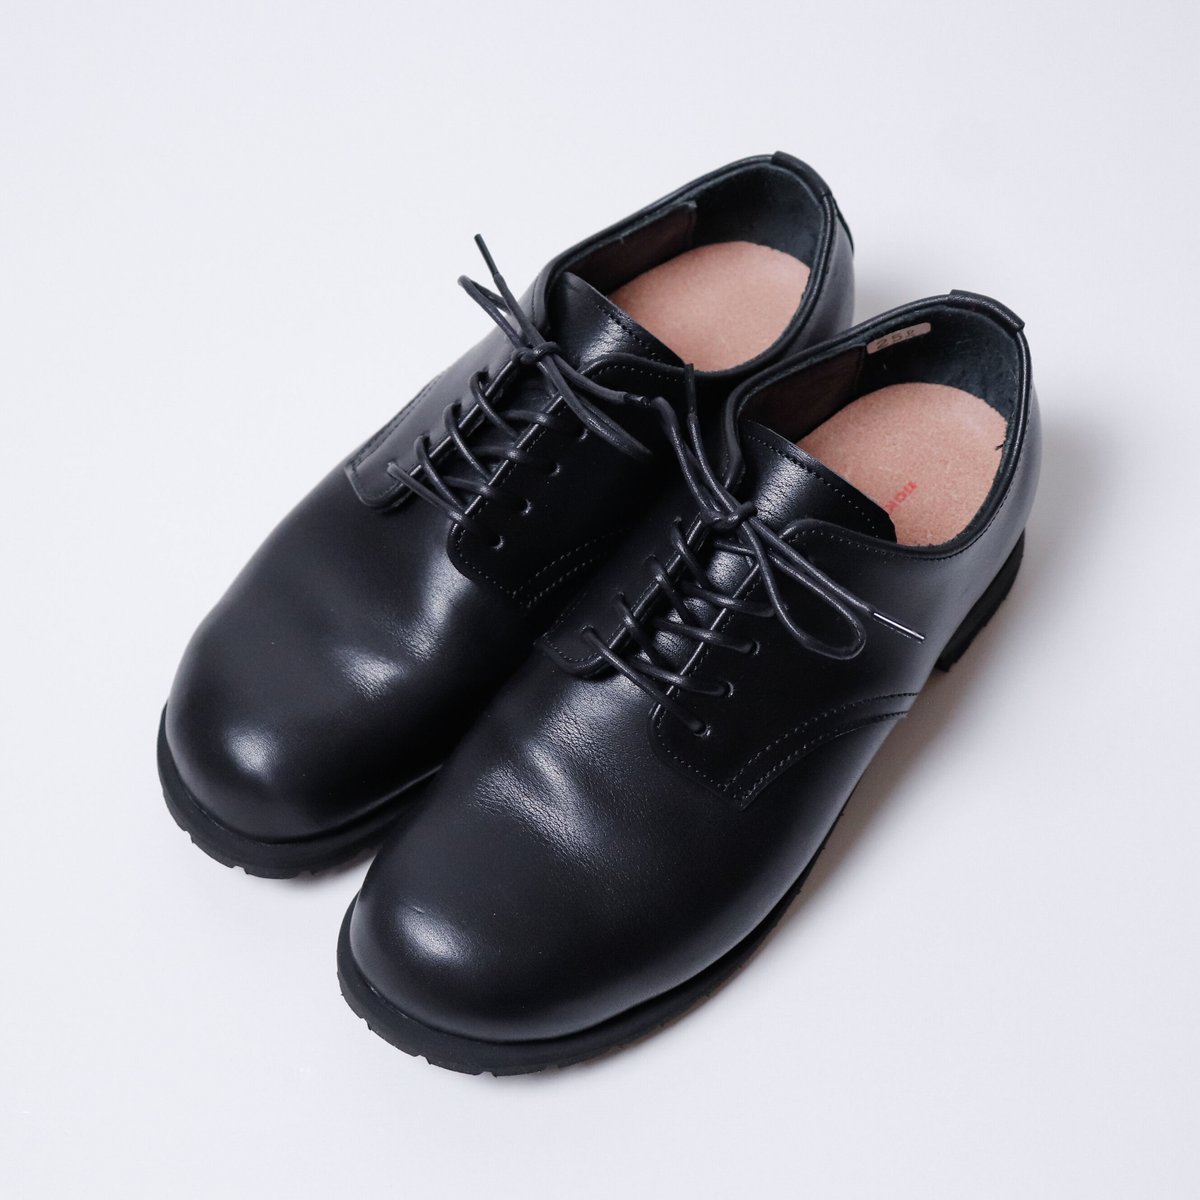 【MEN'S】nakamura shoes[ナカムラシューズ] 防水ヌメ革プレーントゥシューズ